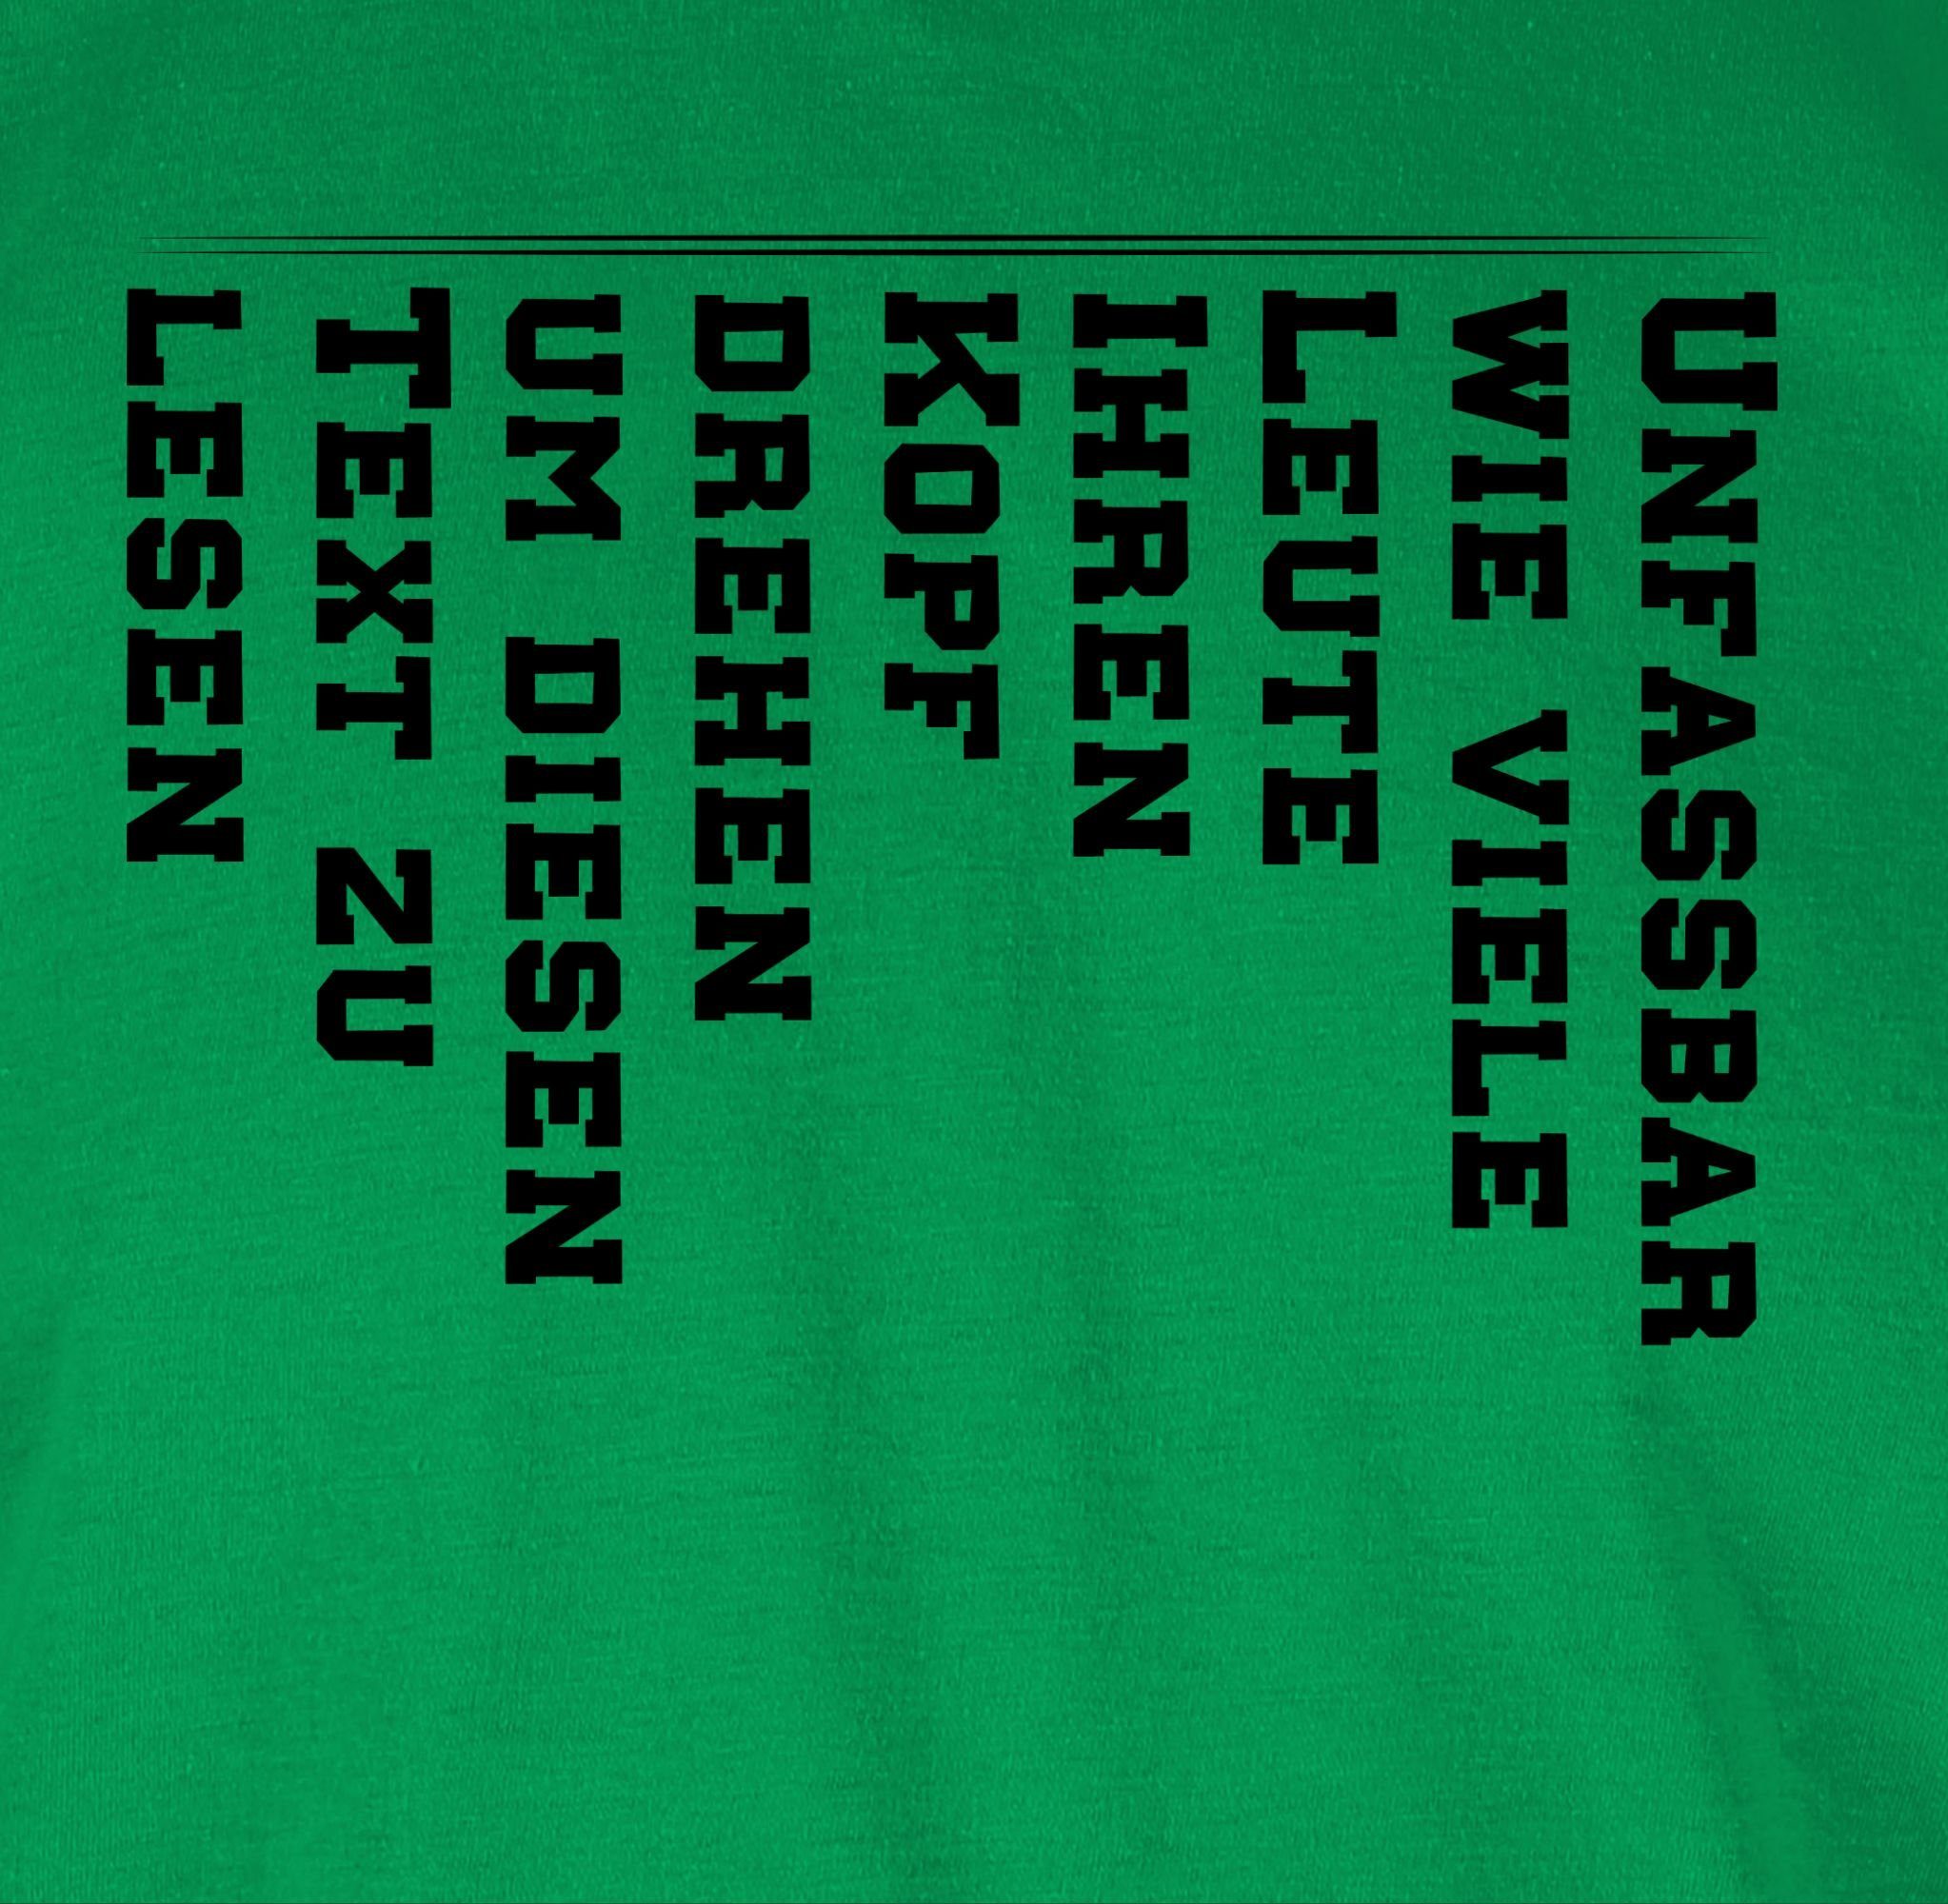 drehen mit lesen zu Leute Statement 3 Sprüche viele Text Kopf den diesen Unfassbar Shirtracer Grün T-Shirt wie Spruch um